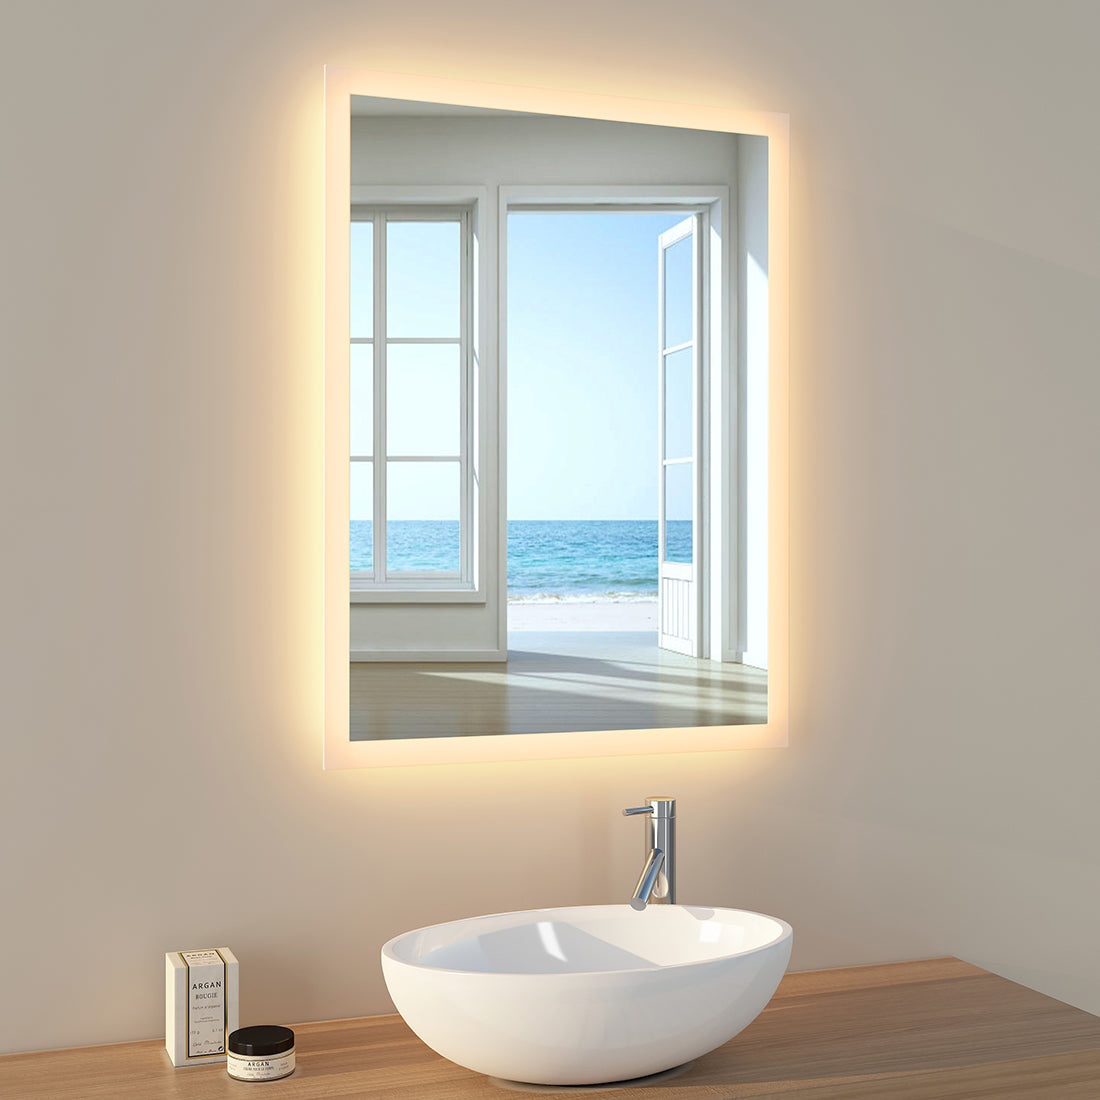 EMKE Badezimmerspiegel mit Lichtern – 80 x 60 cm – beleuchteter Spiegel für Badezimmerwand